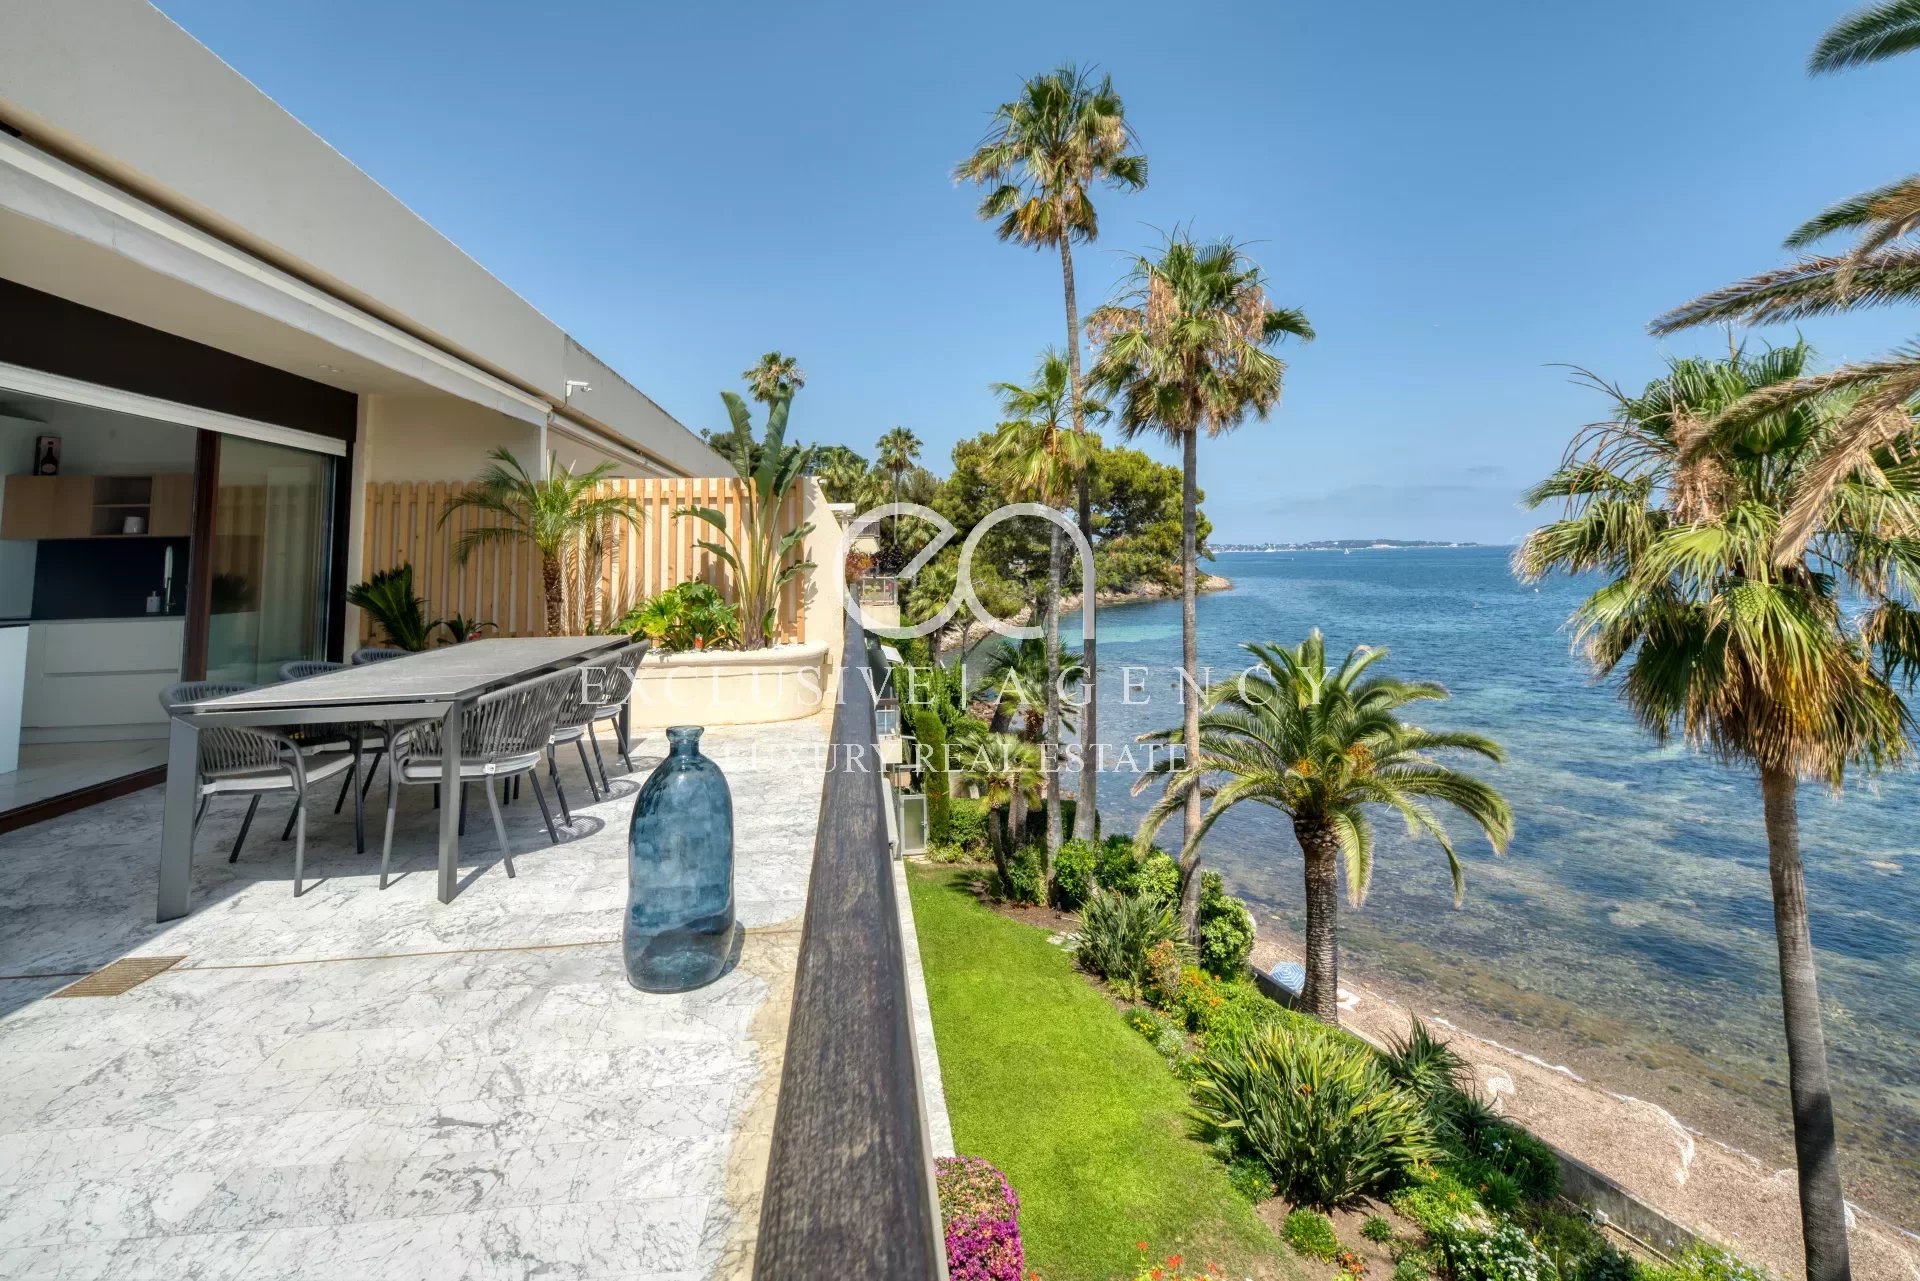 Cannes Palm Beach appartement 4 pièces 90m² pieds dans l'eau